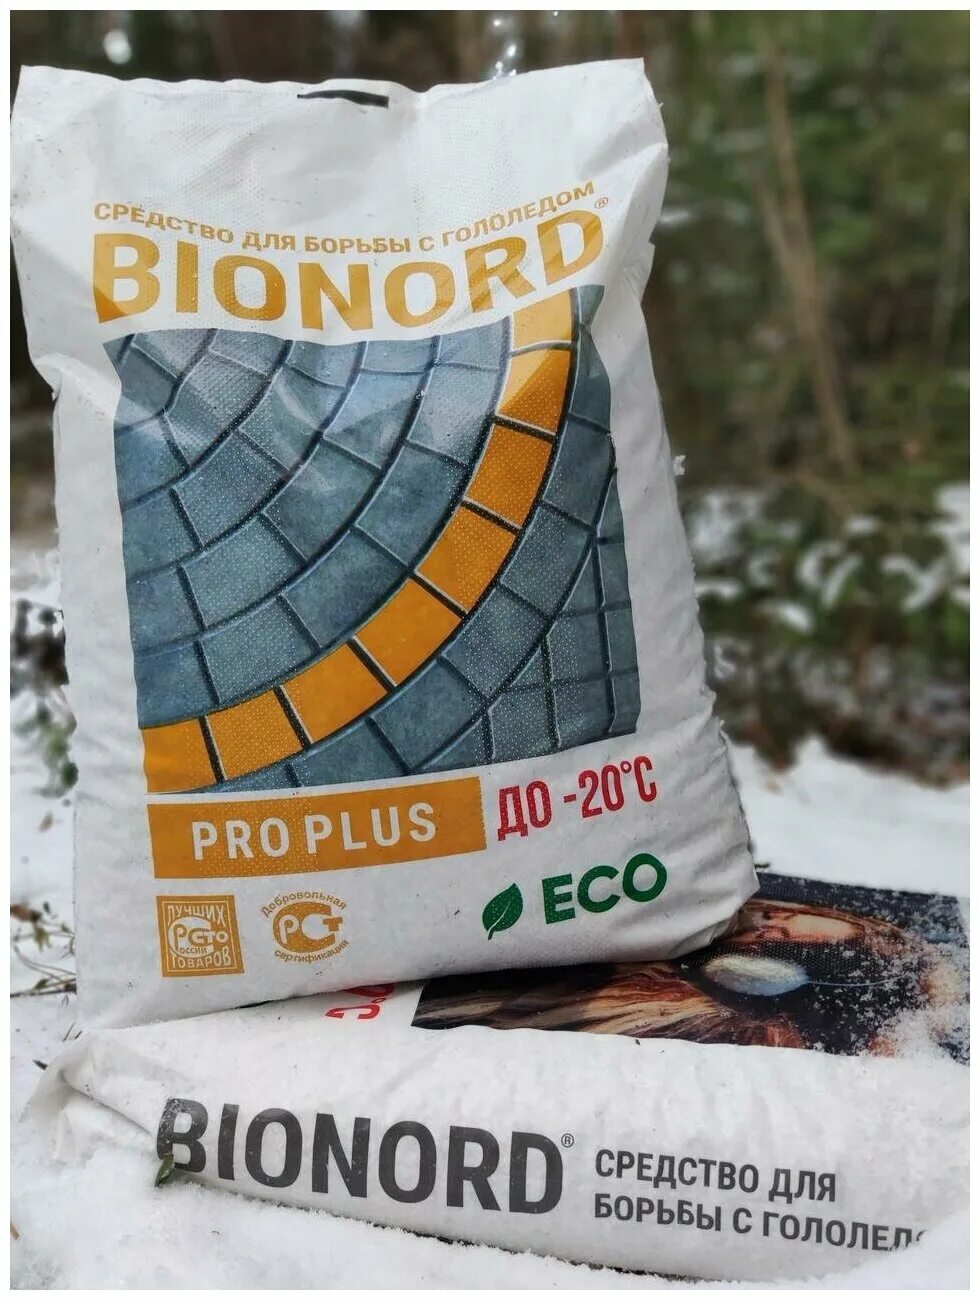 Реагент бионорд. Противогололедный реагент BIONORD (Бионорд) Pro Plus -20 23 кг мешок. Бионорд Pro Plus, противогололедный материал в грануле 23 кг. Бионорд Pro -20, противогололедный материал в грануле 23 кг. Реагент противогололедный BIONORD универсальный 23 кг.